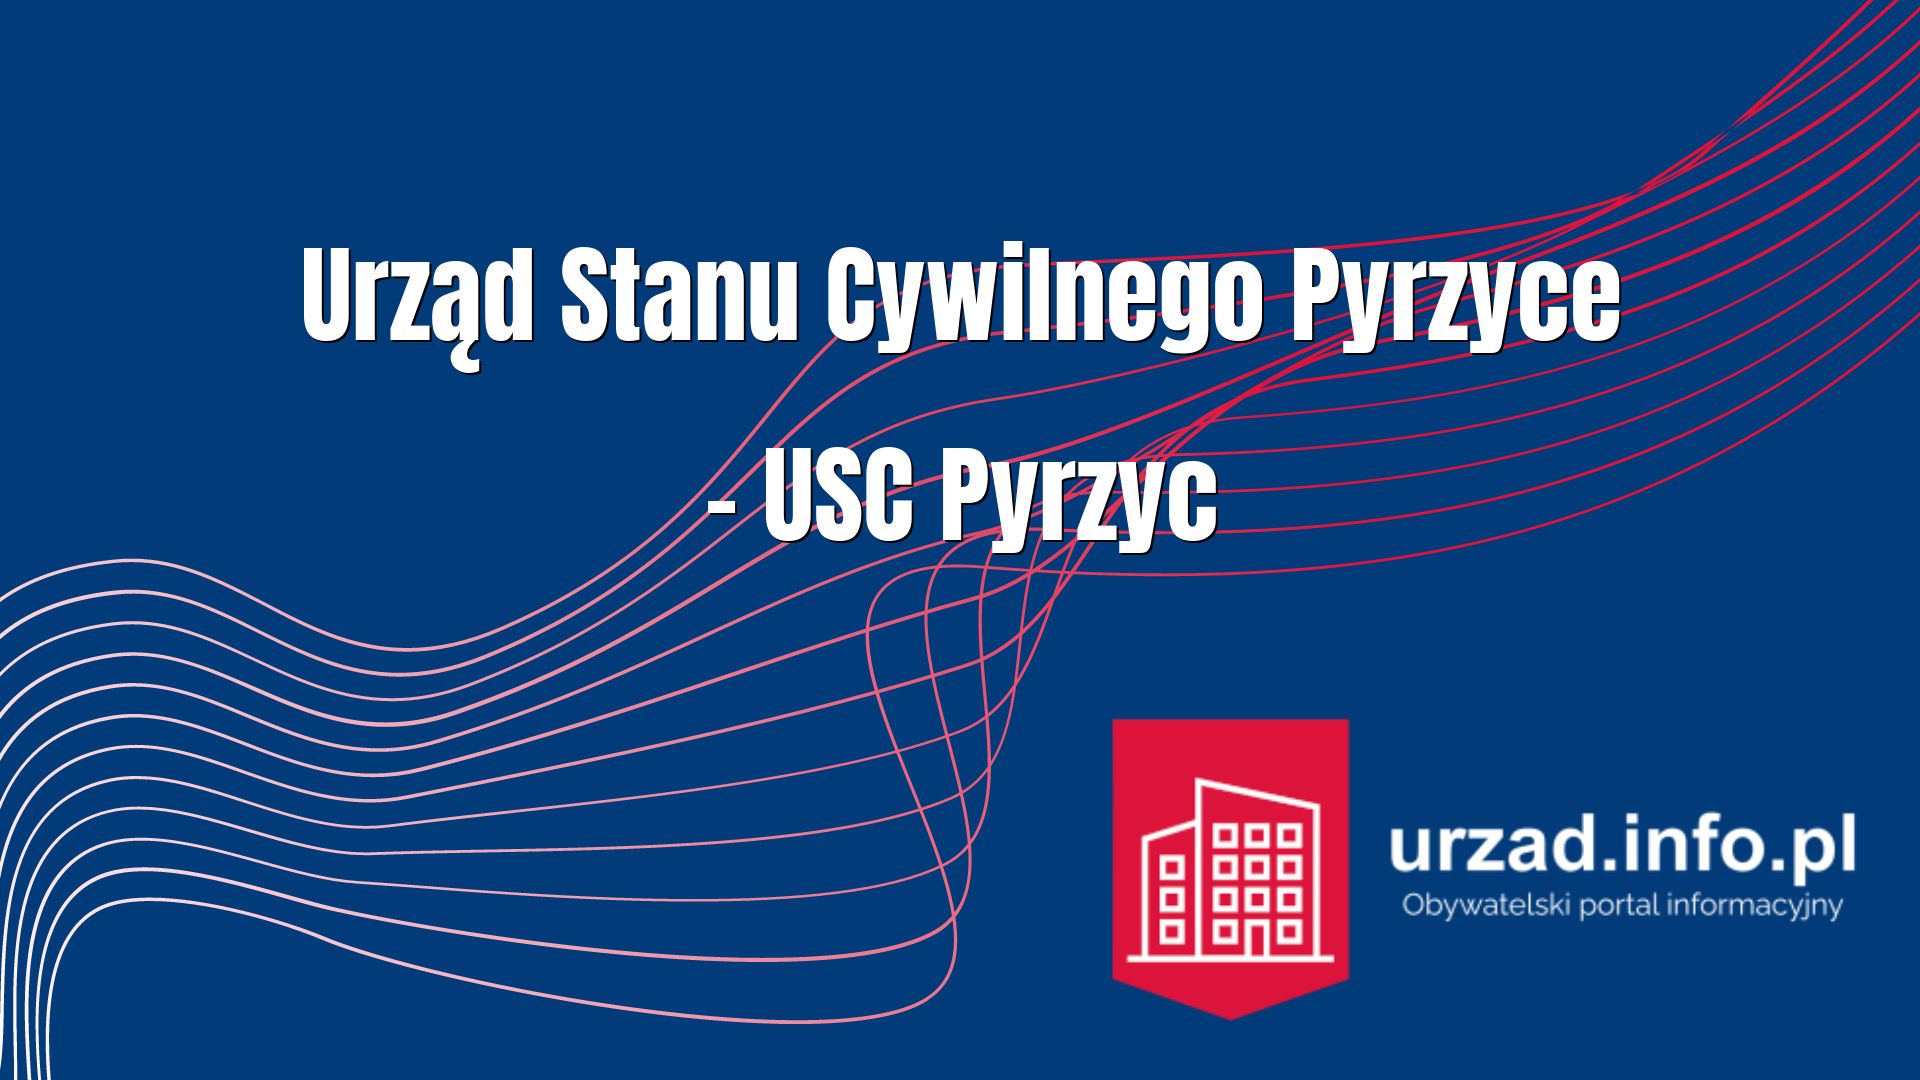 Urząd Stanu Cywilnego Pyrzyce – USC Pyrzyc